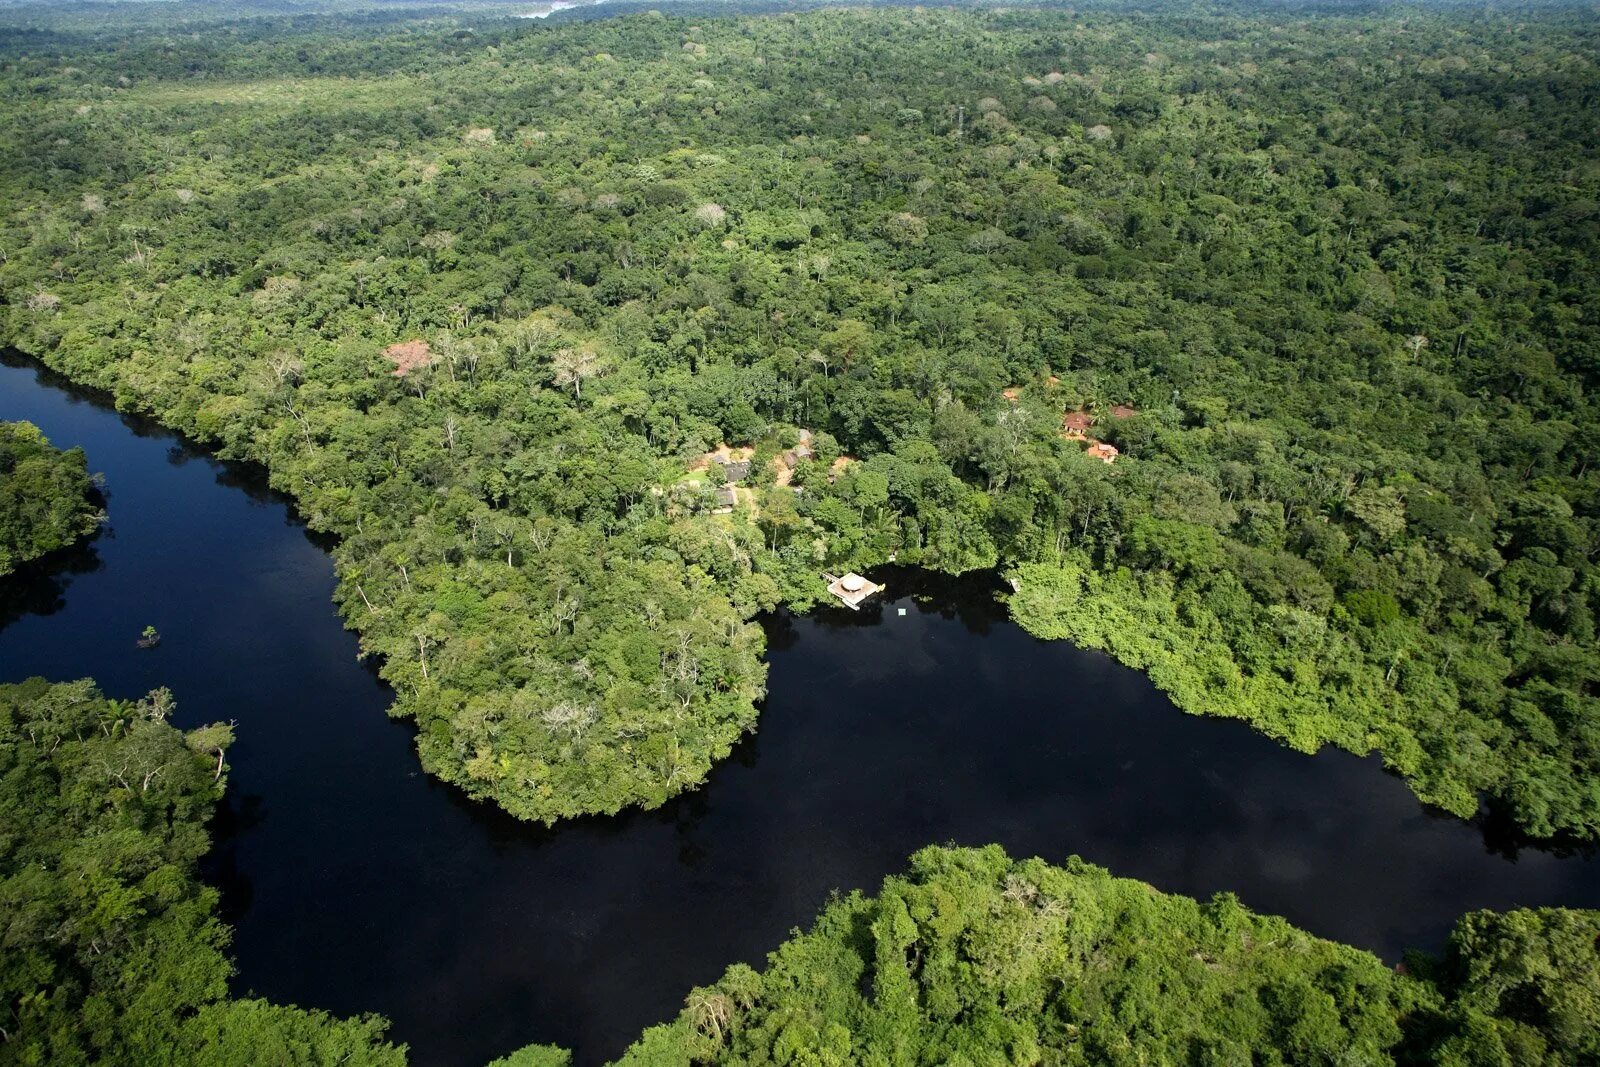 Джунгли бразилии. Бразилия тропические леса Сельва. Сельва амазонки, Южная Америка. Тропические леса амазонки в Бразилии. Амазонка Пантанал.